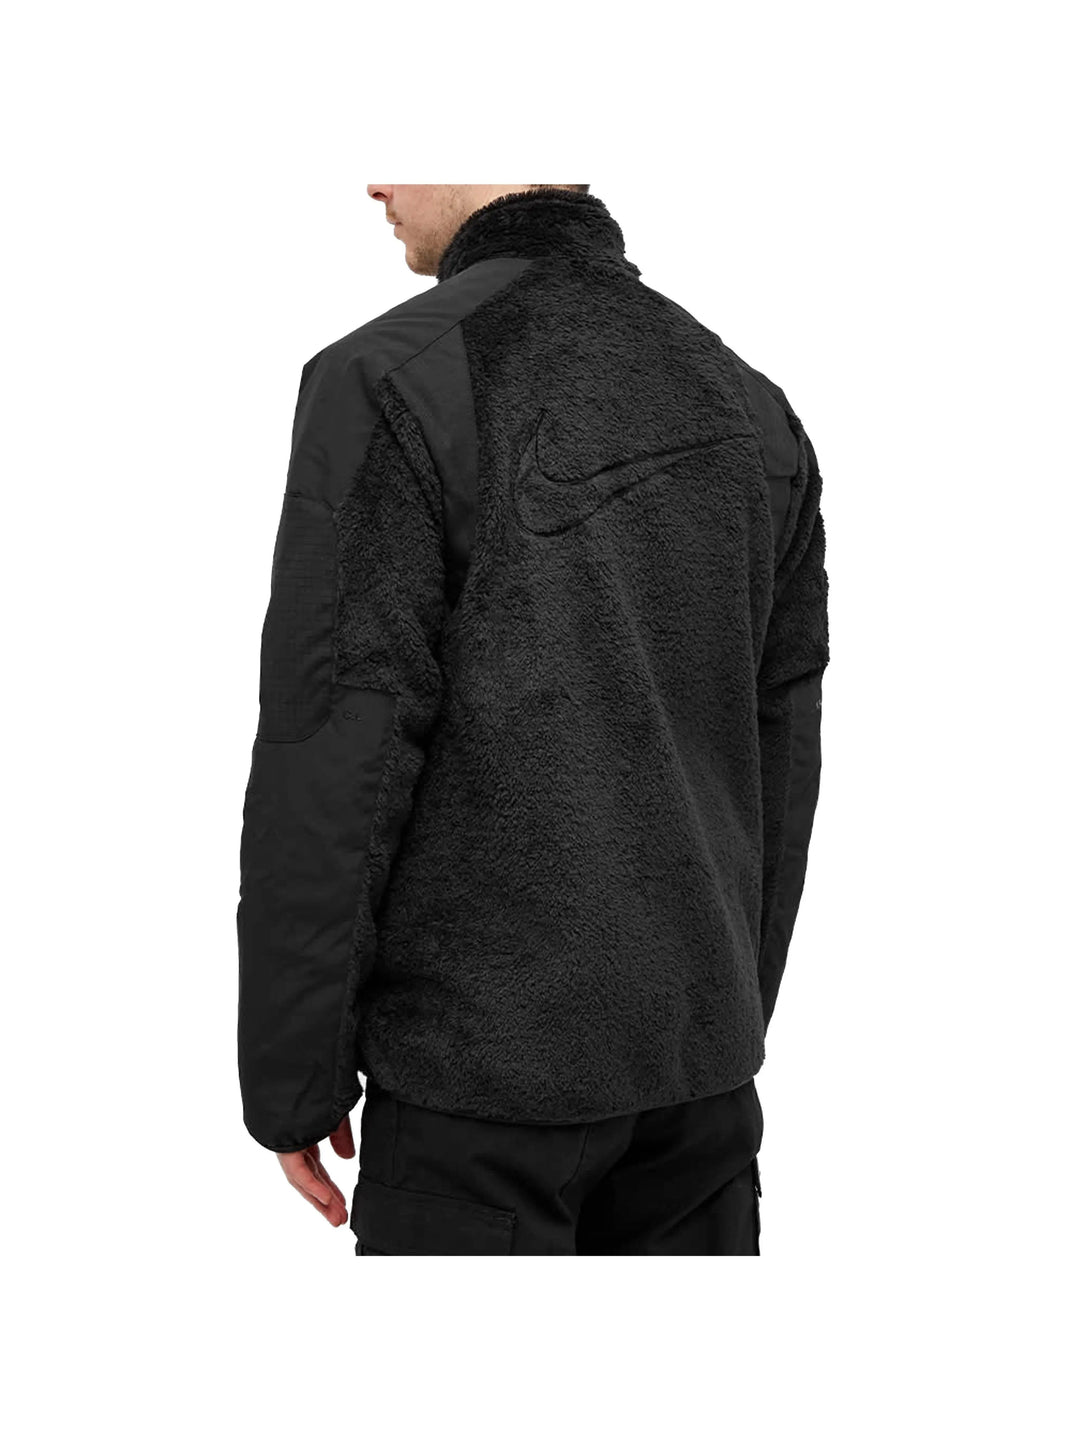 Nike x Drake NOCTA Polar Fleece Jacket Black Prior